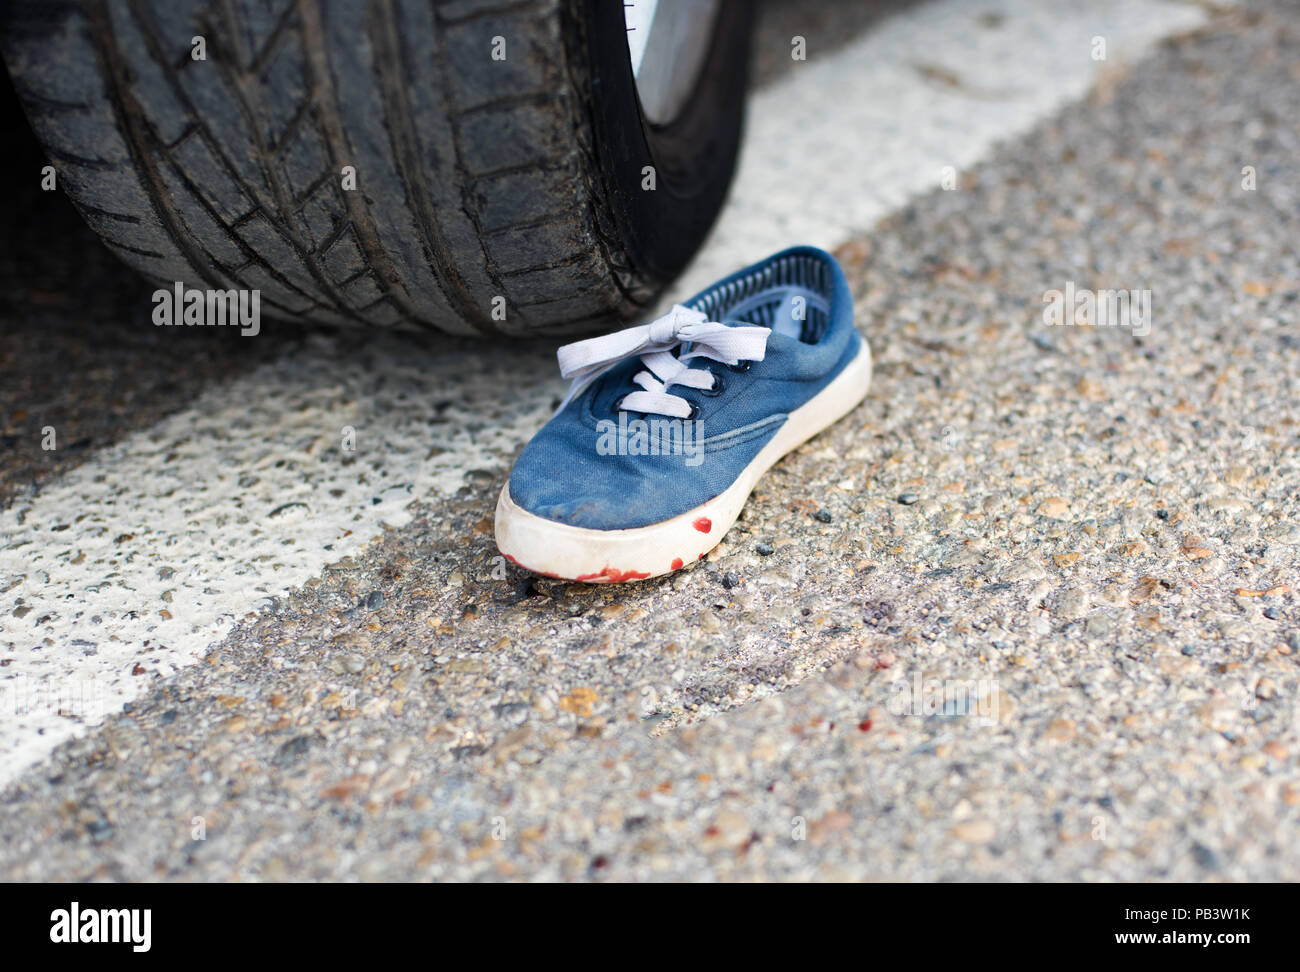 Schuhe Im Blut Unter Dem Auto Rader Stockfotografie Alamy